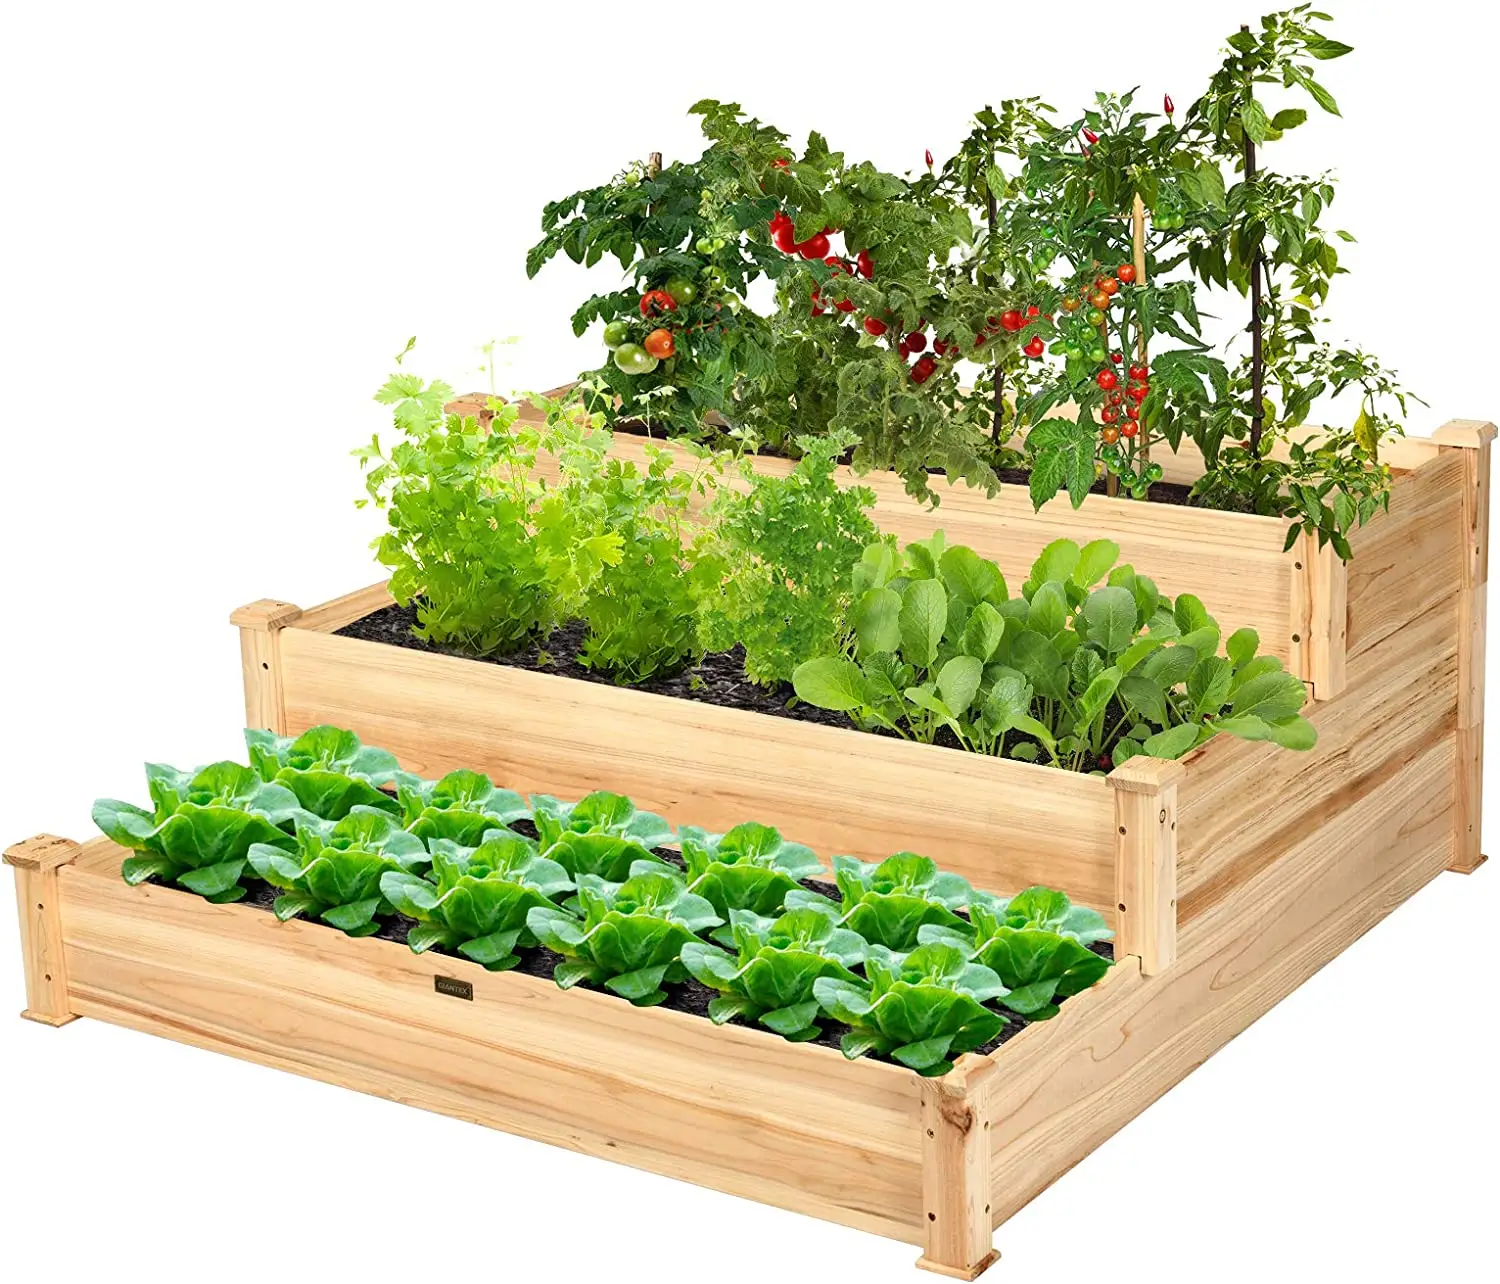 Caoxian huashen3-Tier поднятый сад кровать-шкаф для нарезки, шинкования овощей и цветок плантатор коробка Наружние Сеялки Контейнер